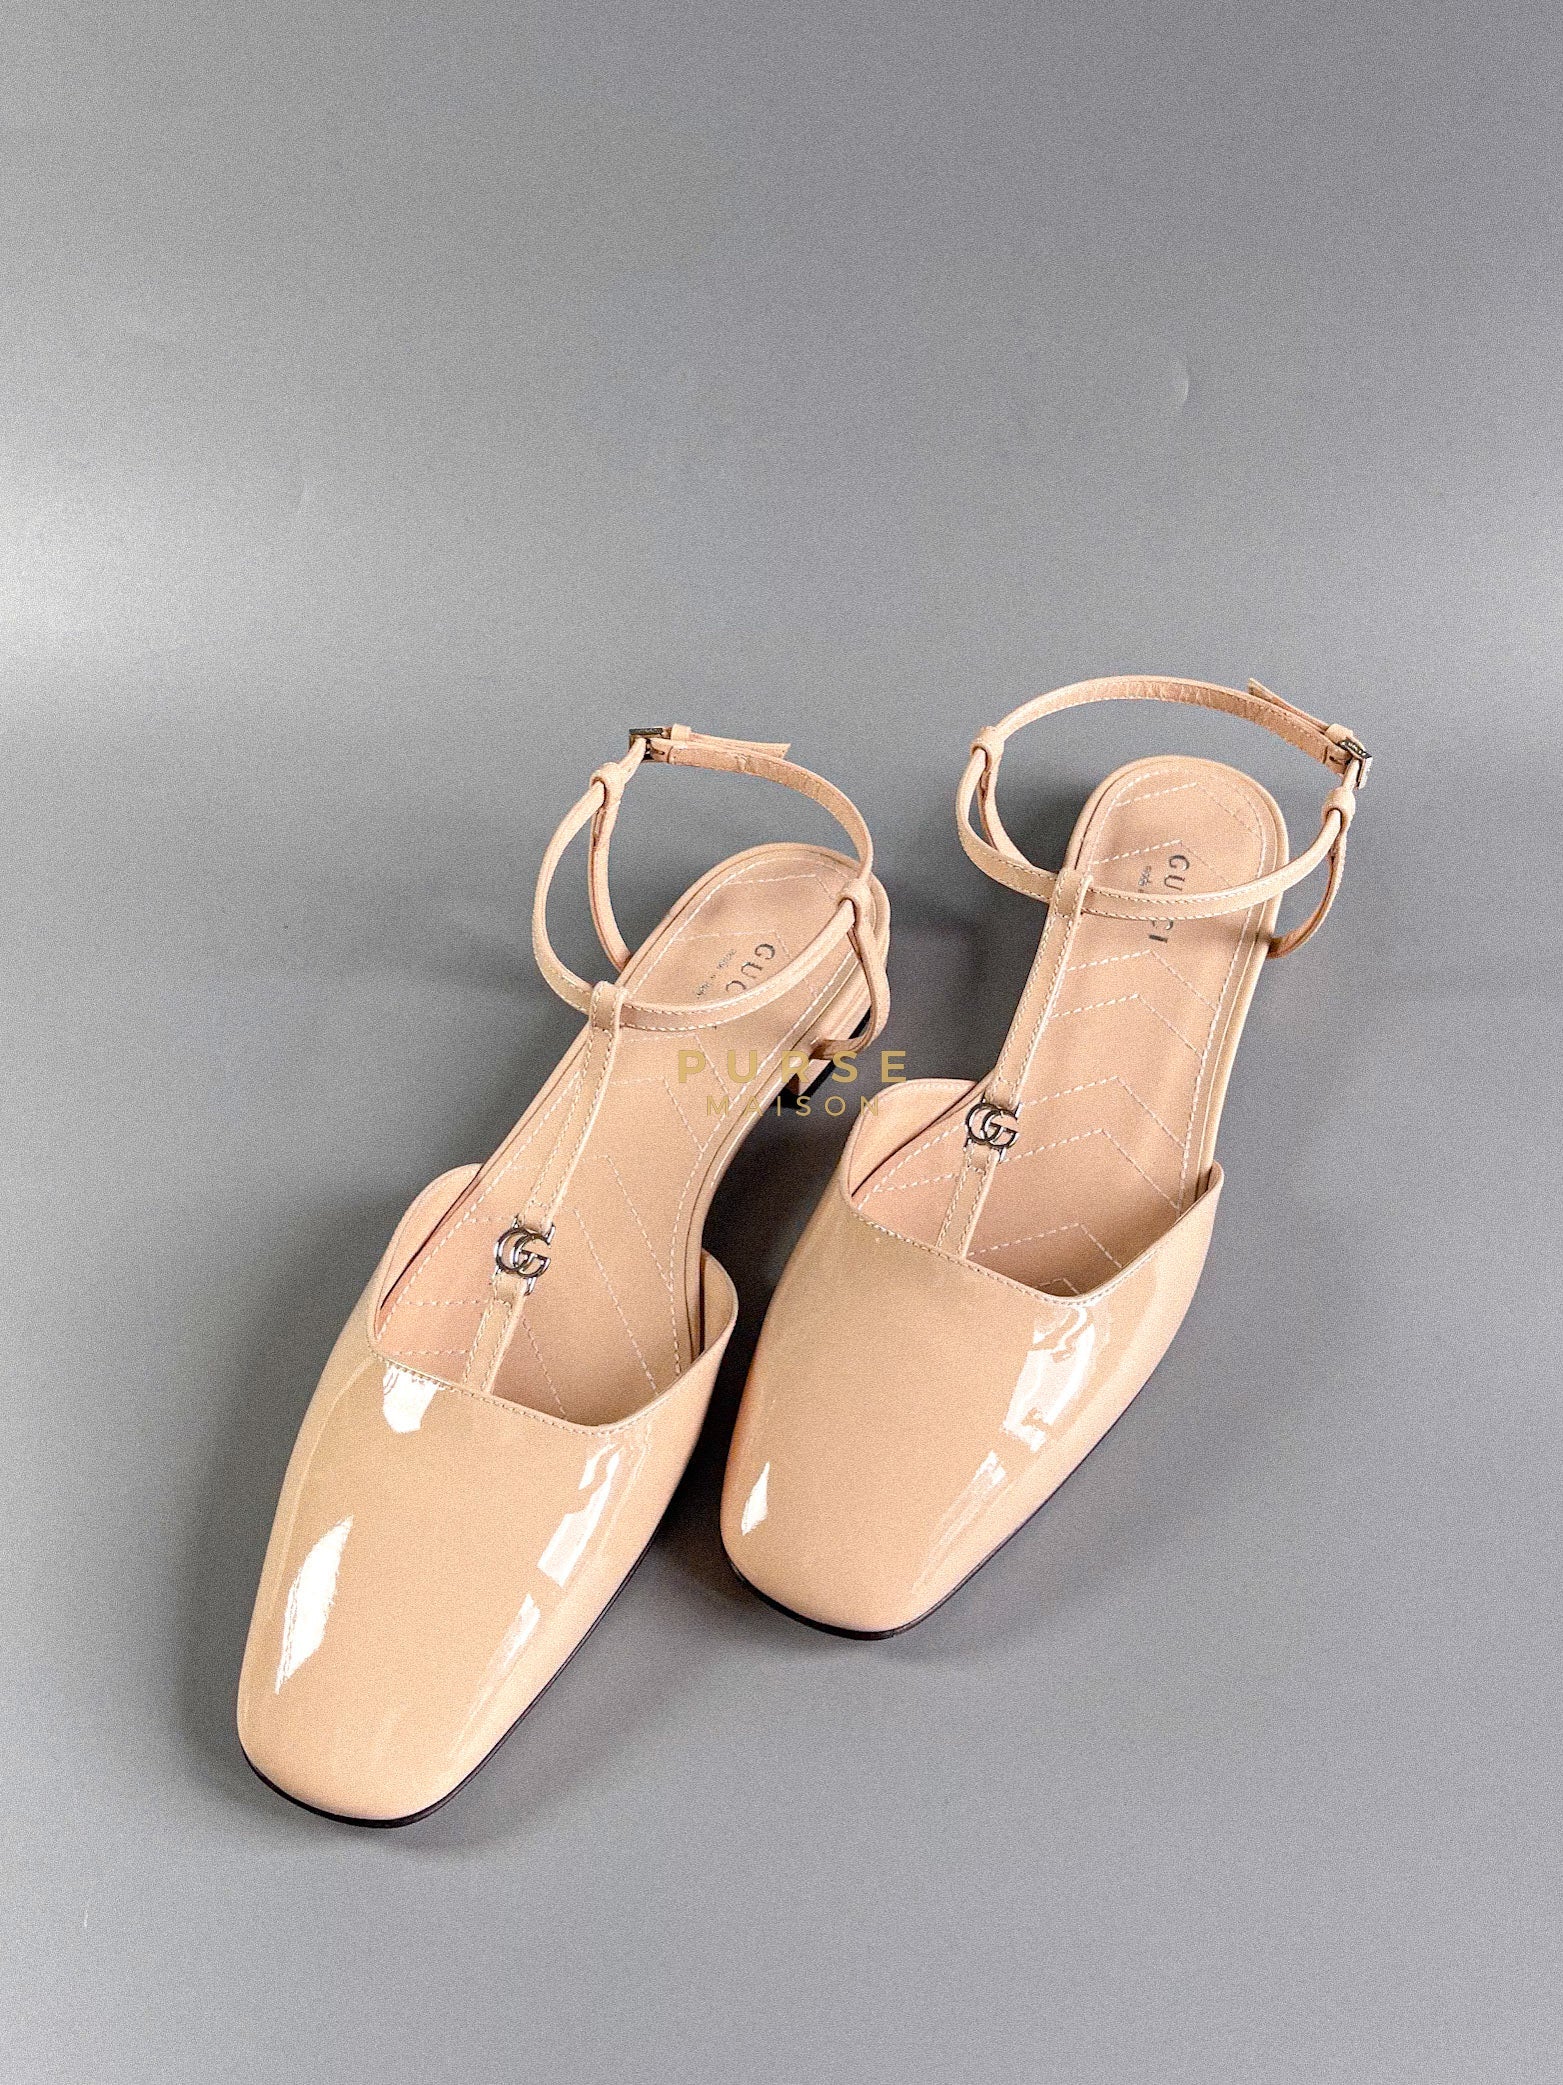 Double G Beige Patent Leather Ballerina Sandals (Size 38 EU, 26cm) | Purse Maison Luxury Bags Shop